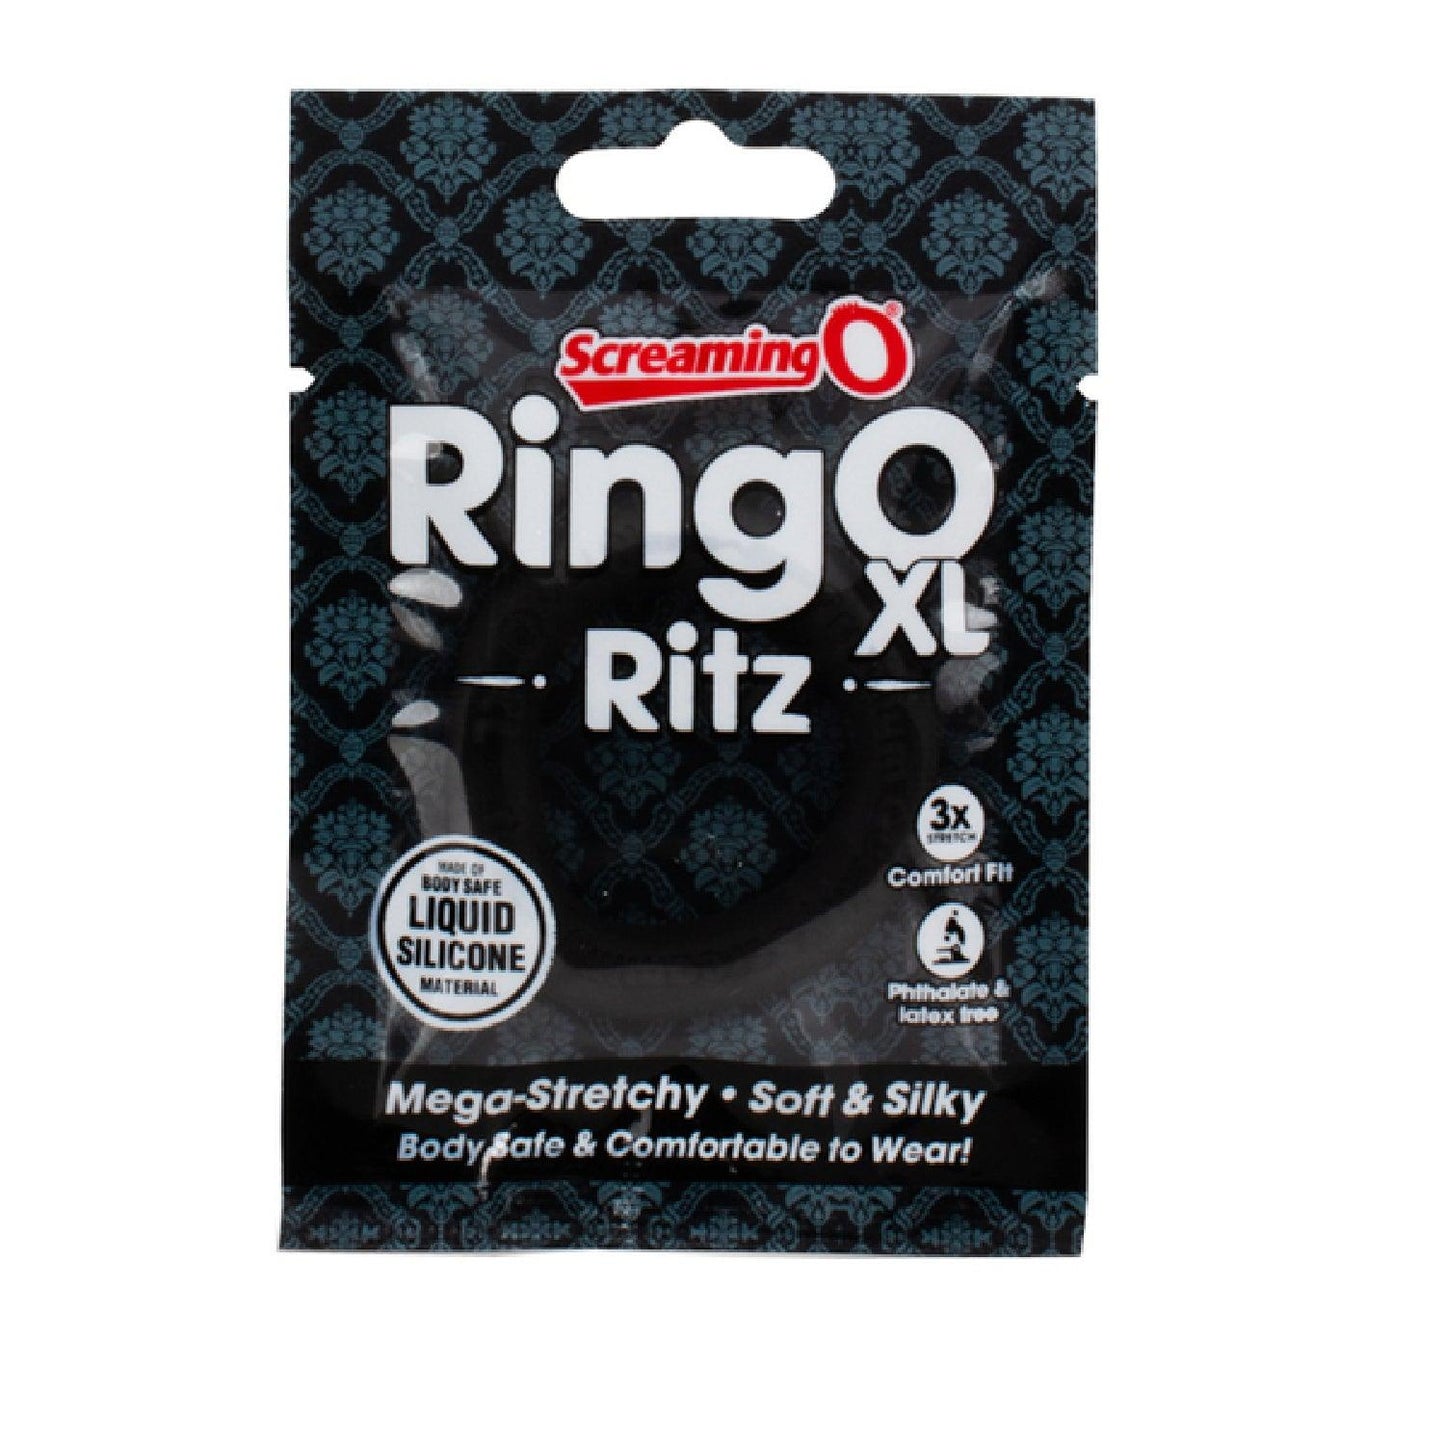 RingO Ritz XL - Take A Peek